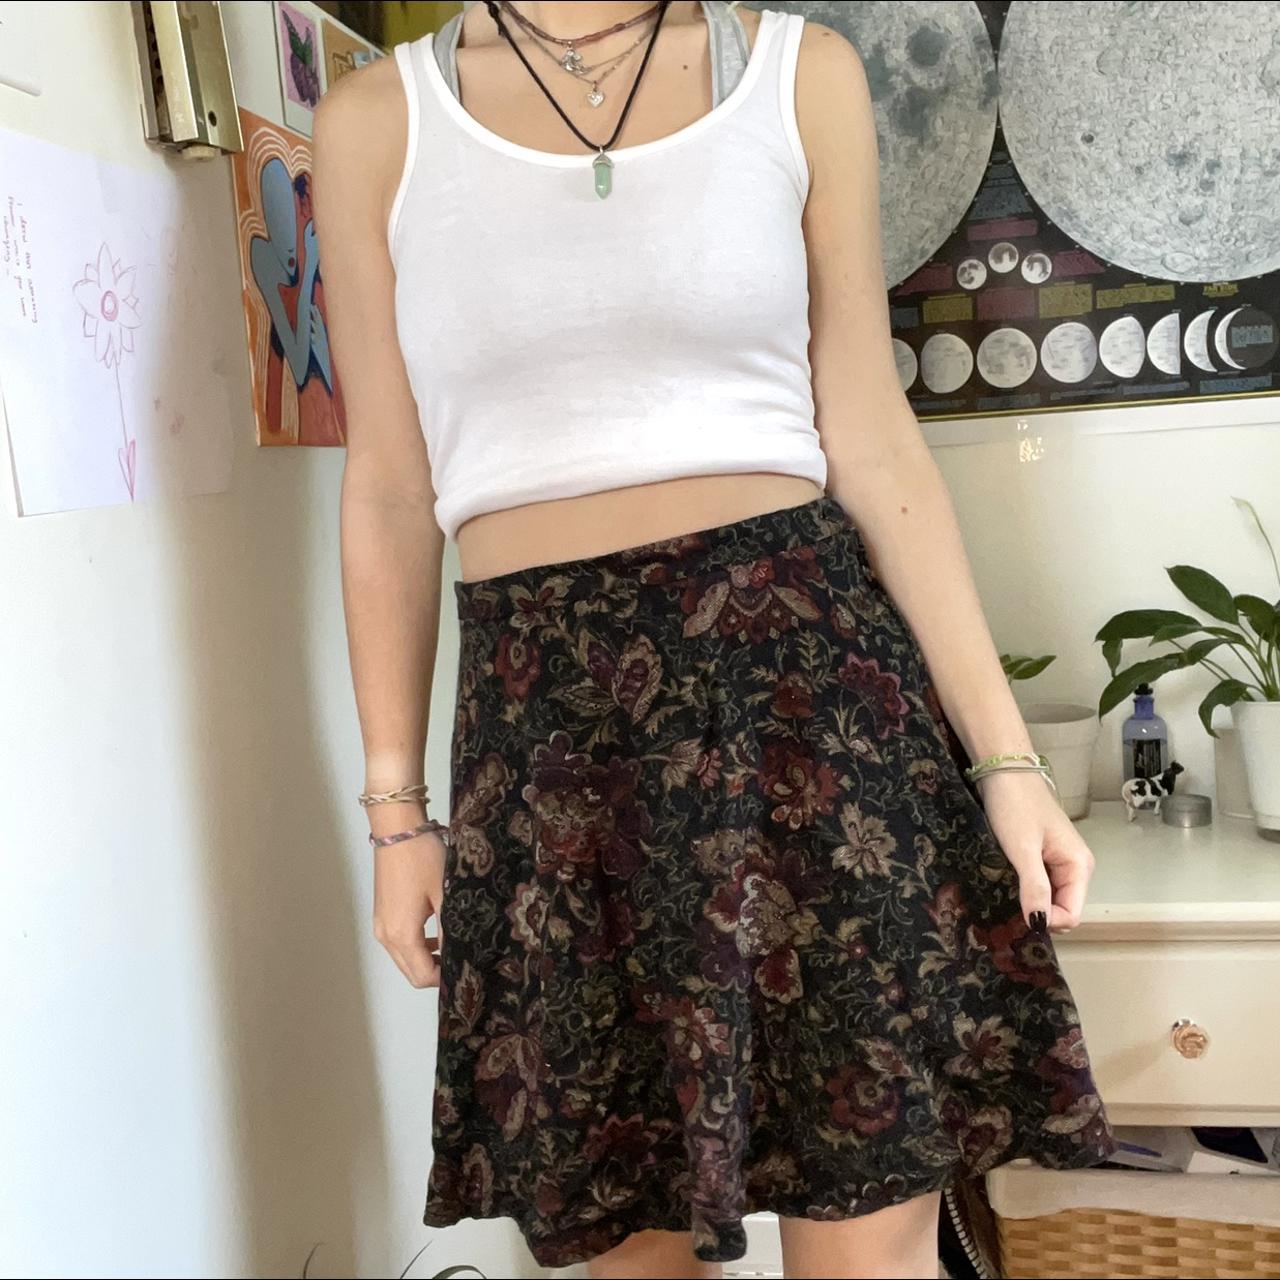 Floral Vintage Inspired Skirt ⏰🥀 super cute floral... - Depop